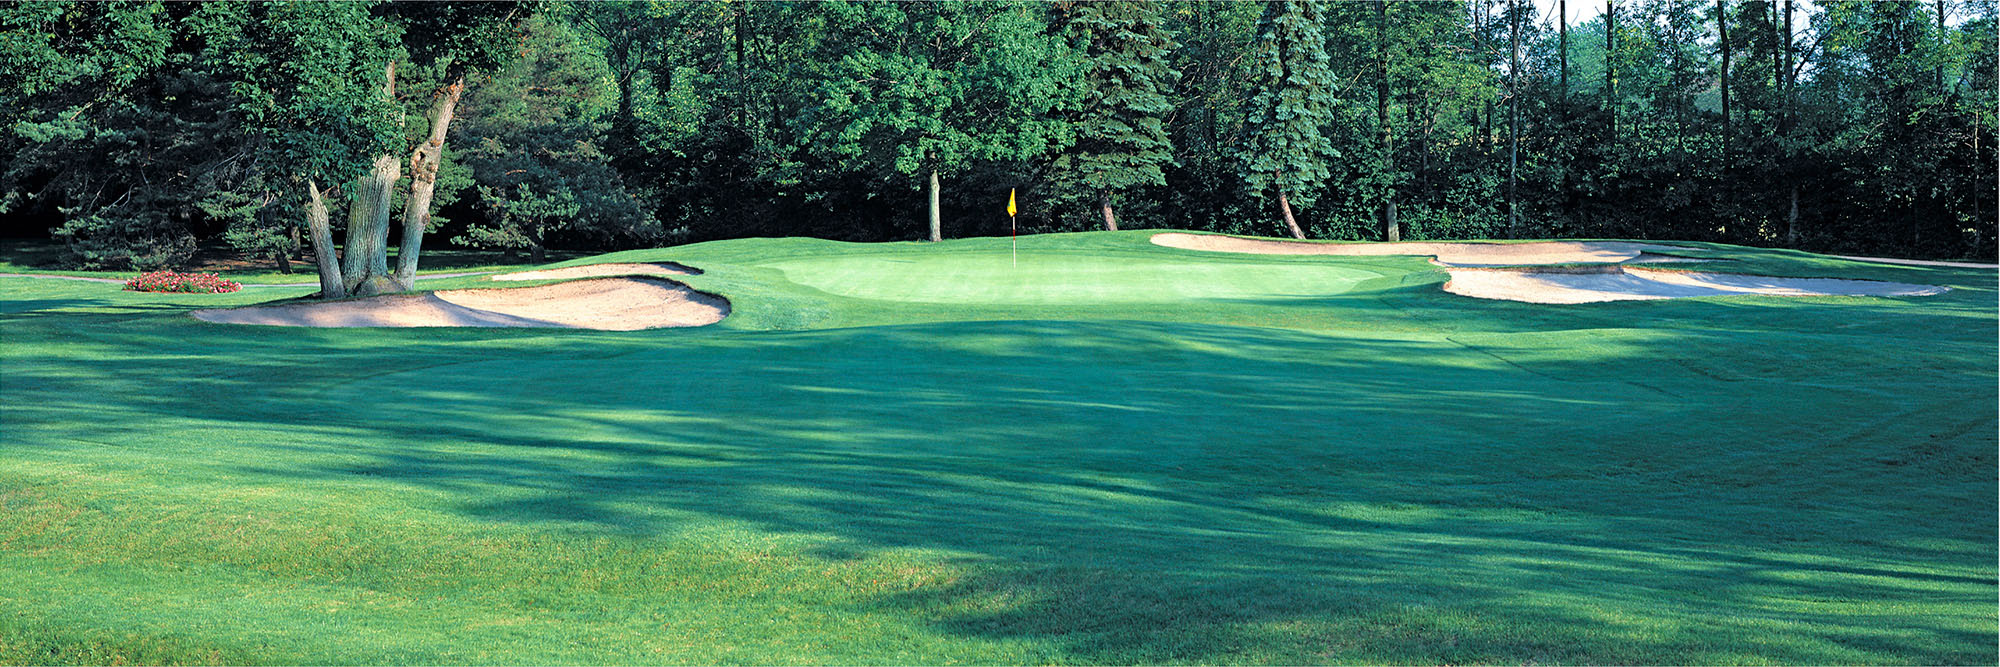 Golf Course Image - Niagara Falls No. 4